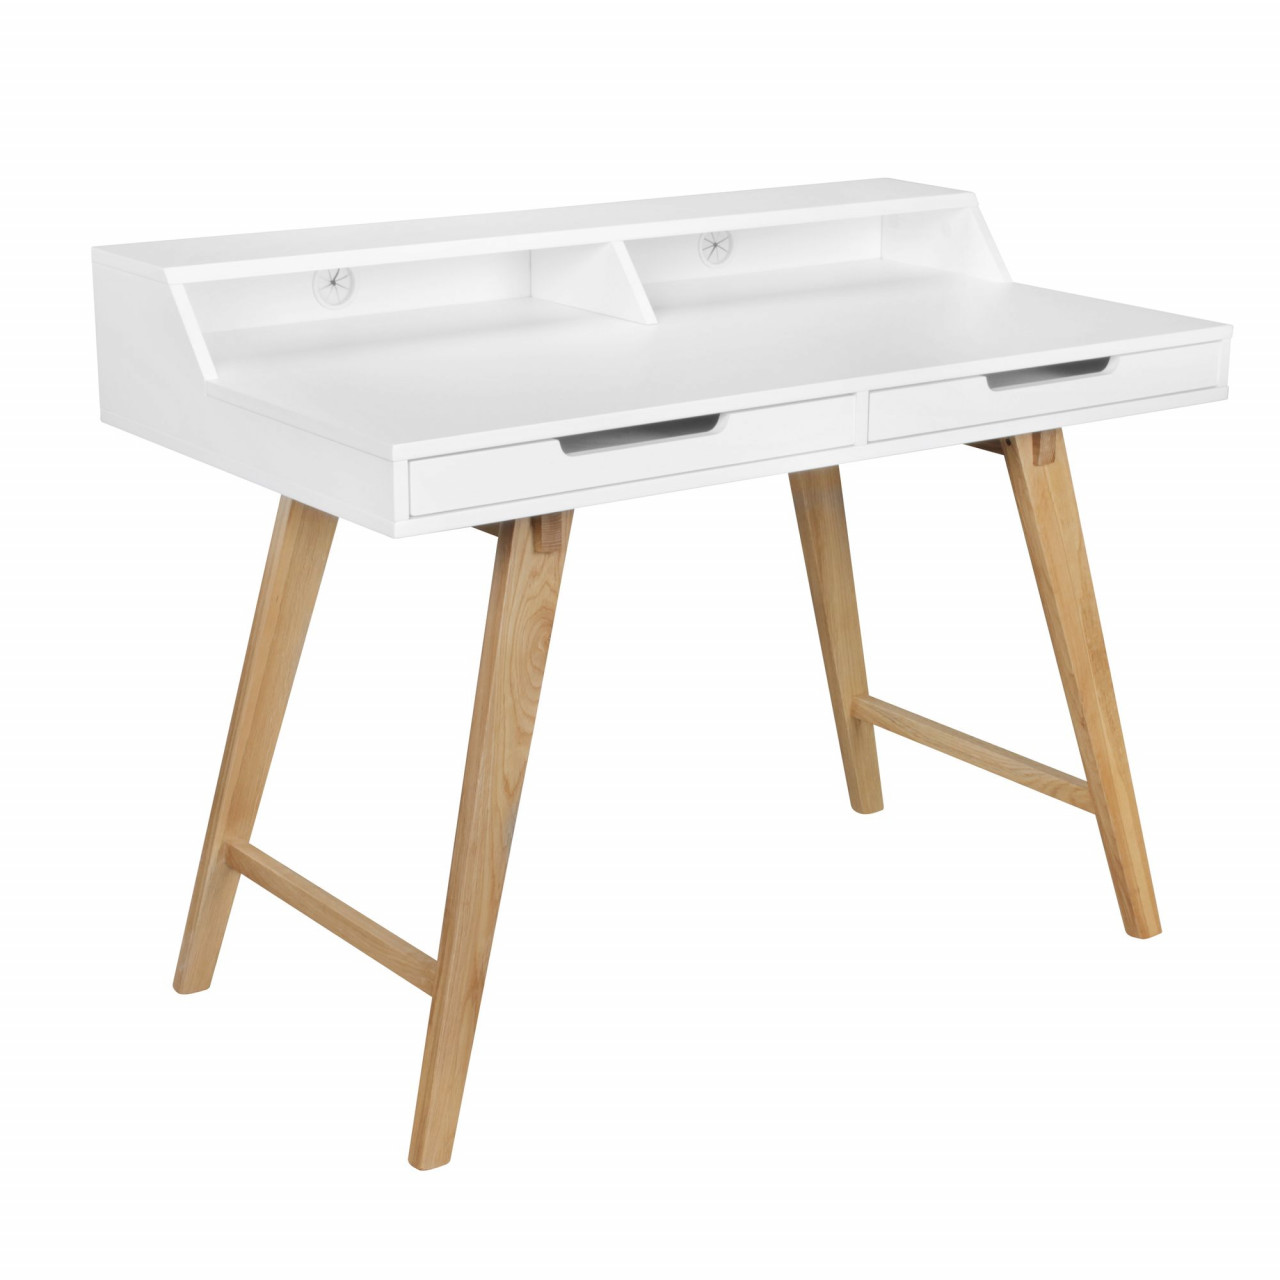 Schreibtisch 110 x 85 x 60 cm MDF-Holz skandinavisch wei? matt Arbeitstisch von Wohnling